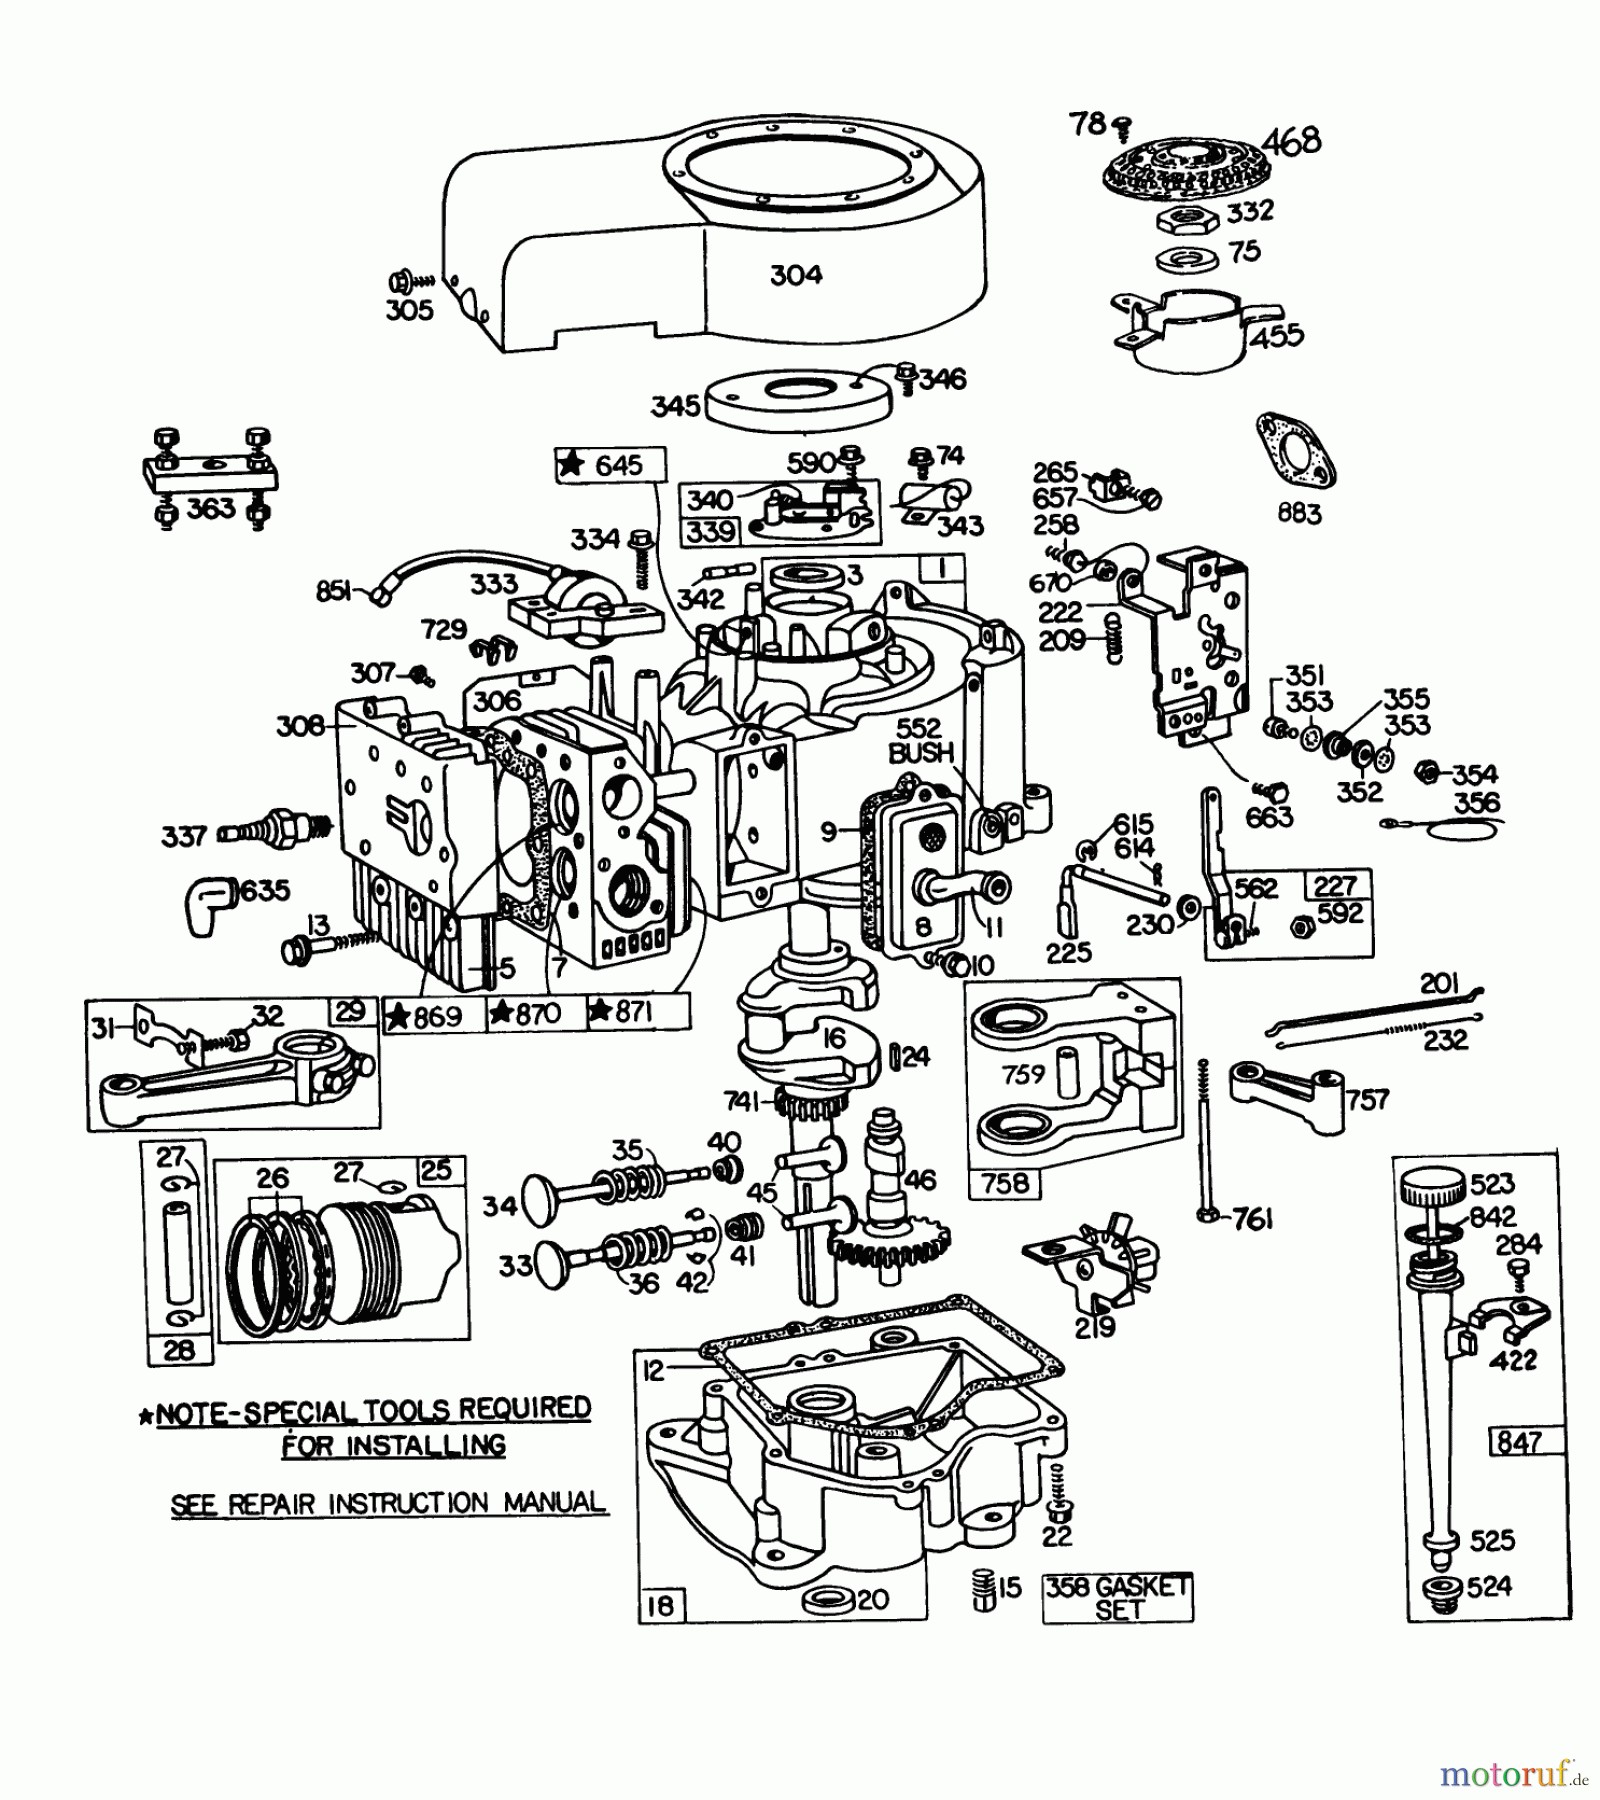 Honda Small Engine Diagram Honda Small Engine Carburetor Diagram Honda Wiring Diagrams